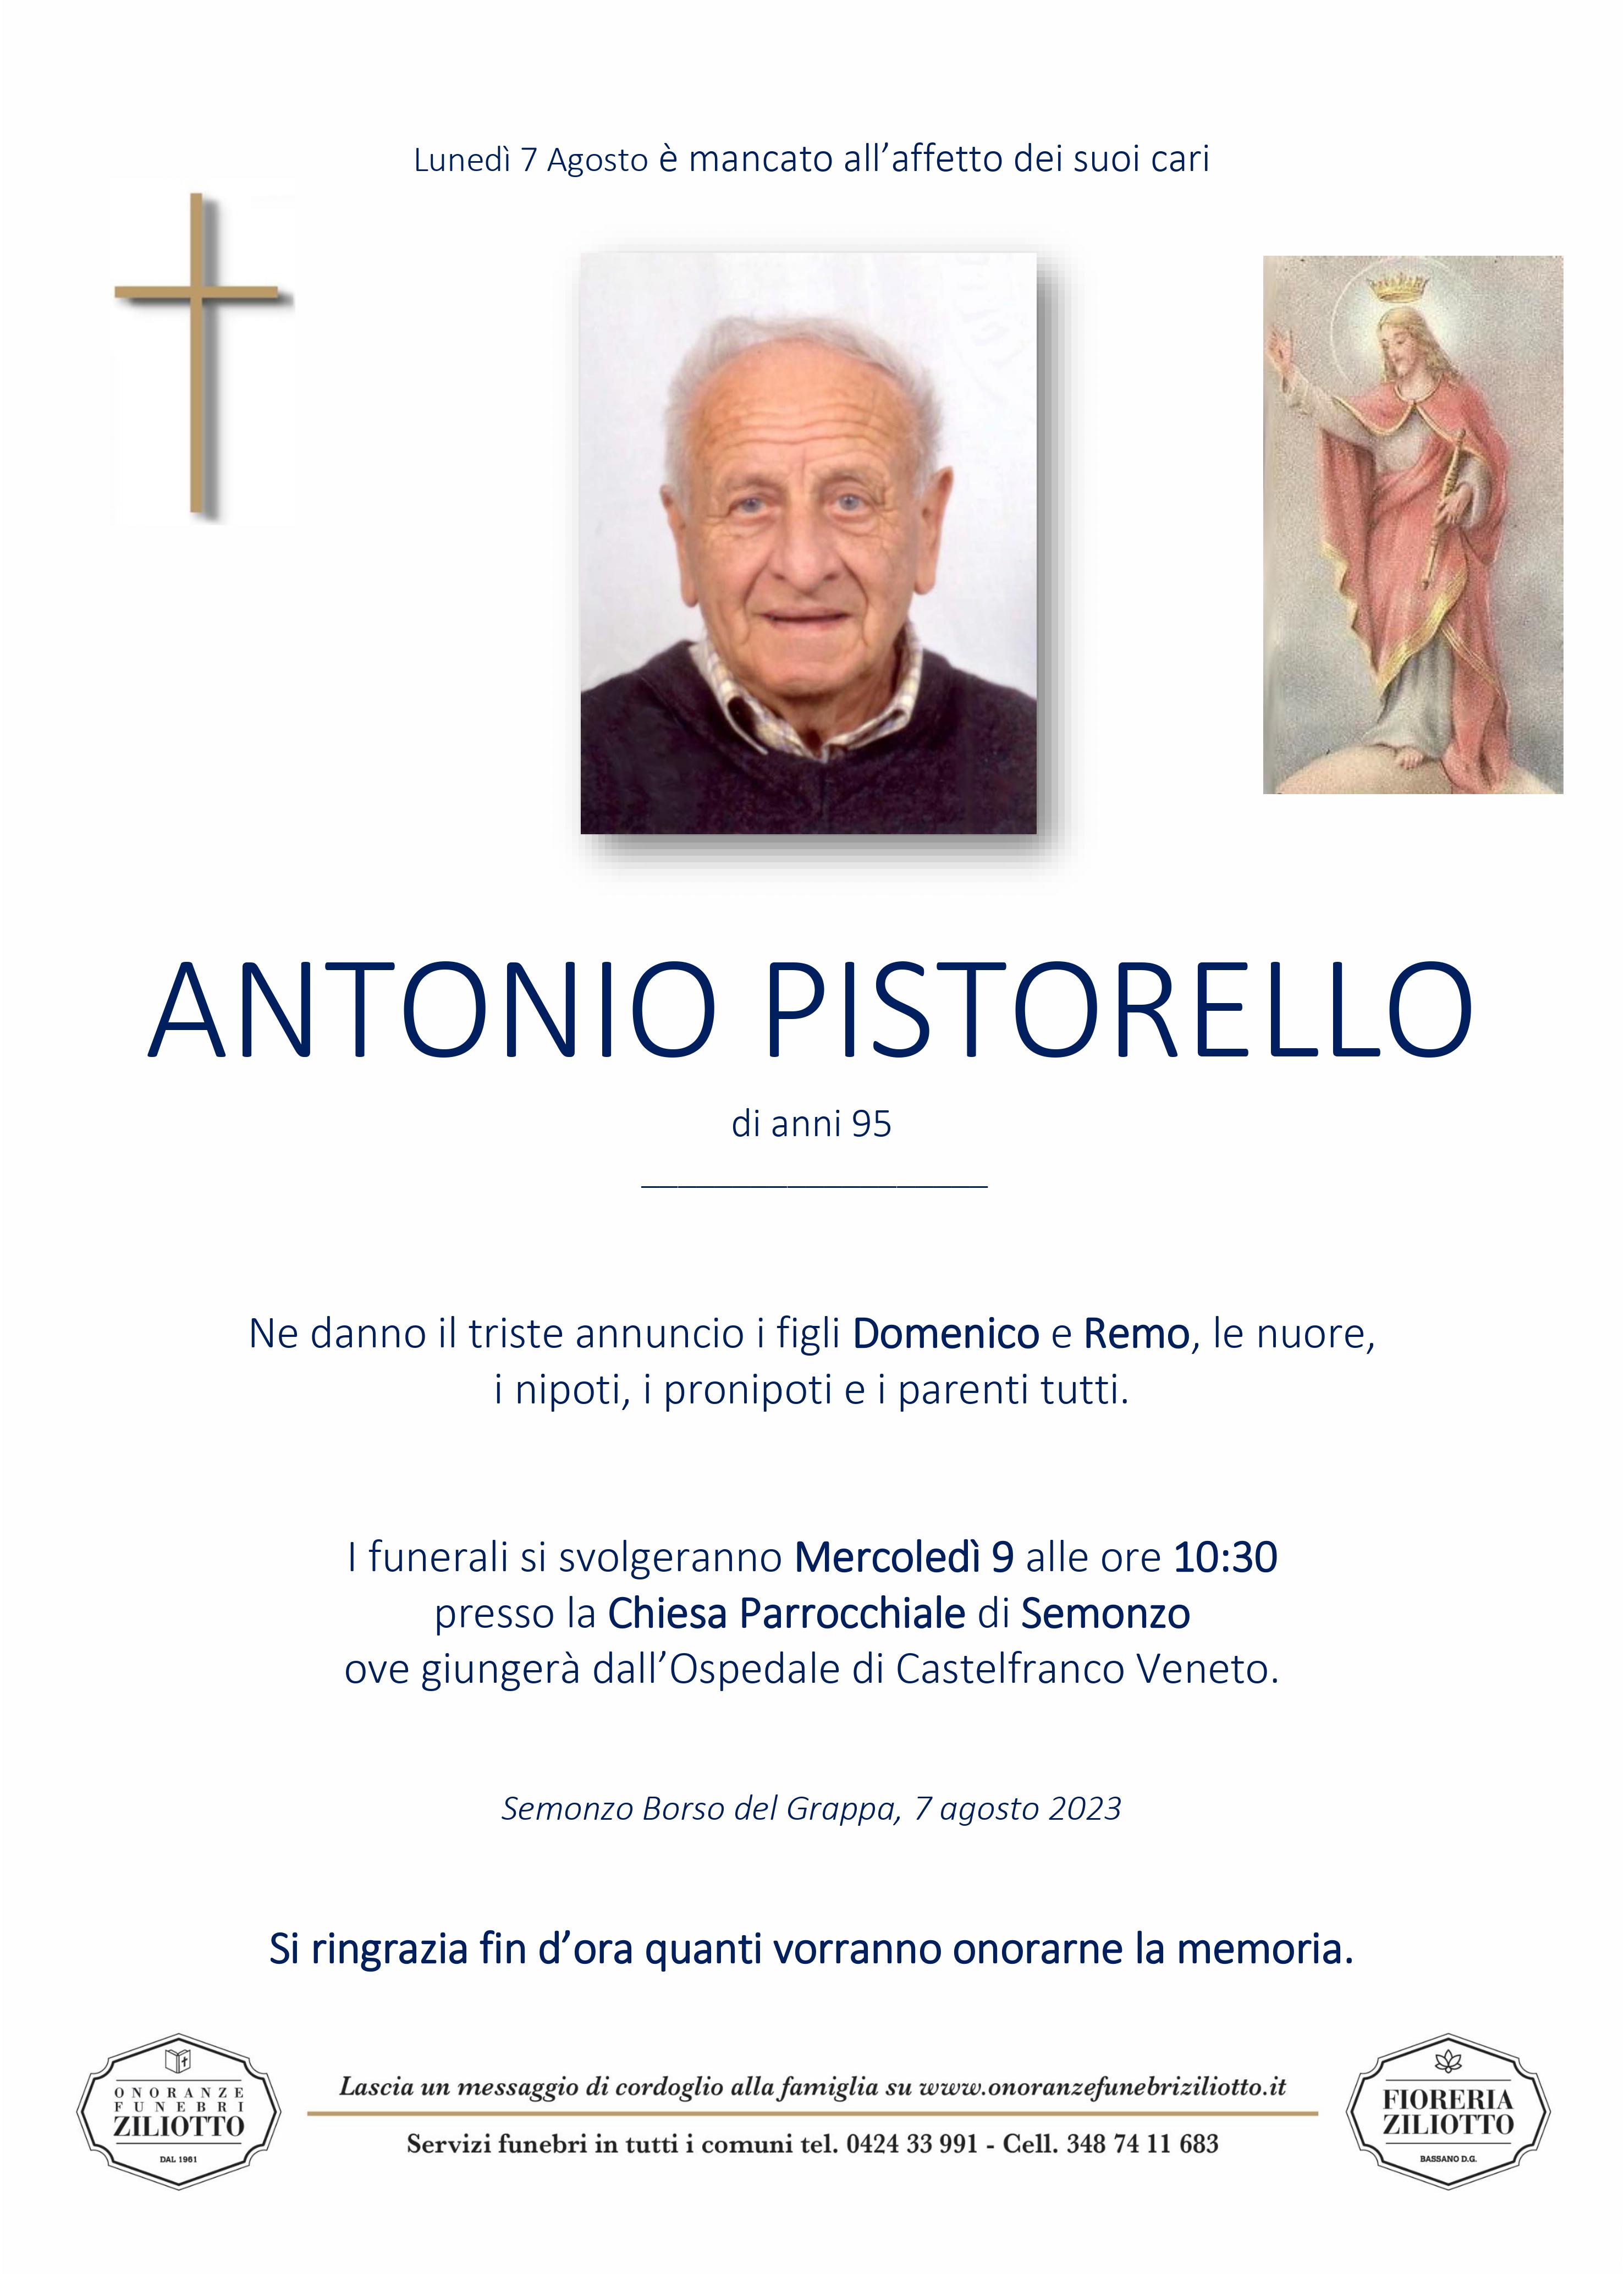 Antonio Pistorello - 95 anni - Semonzo di Borso del Grappa